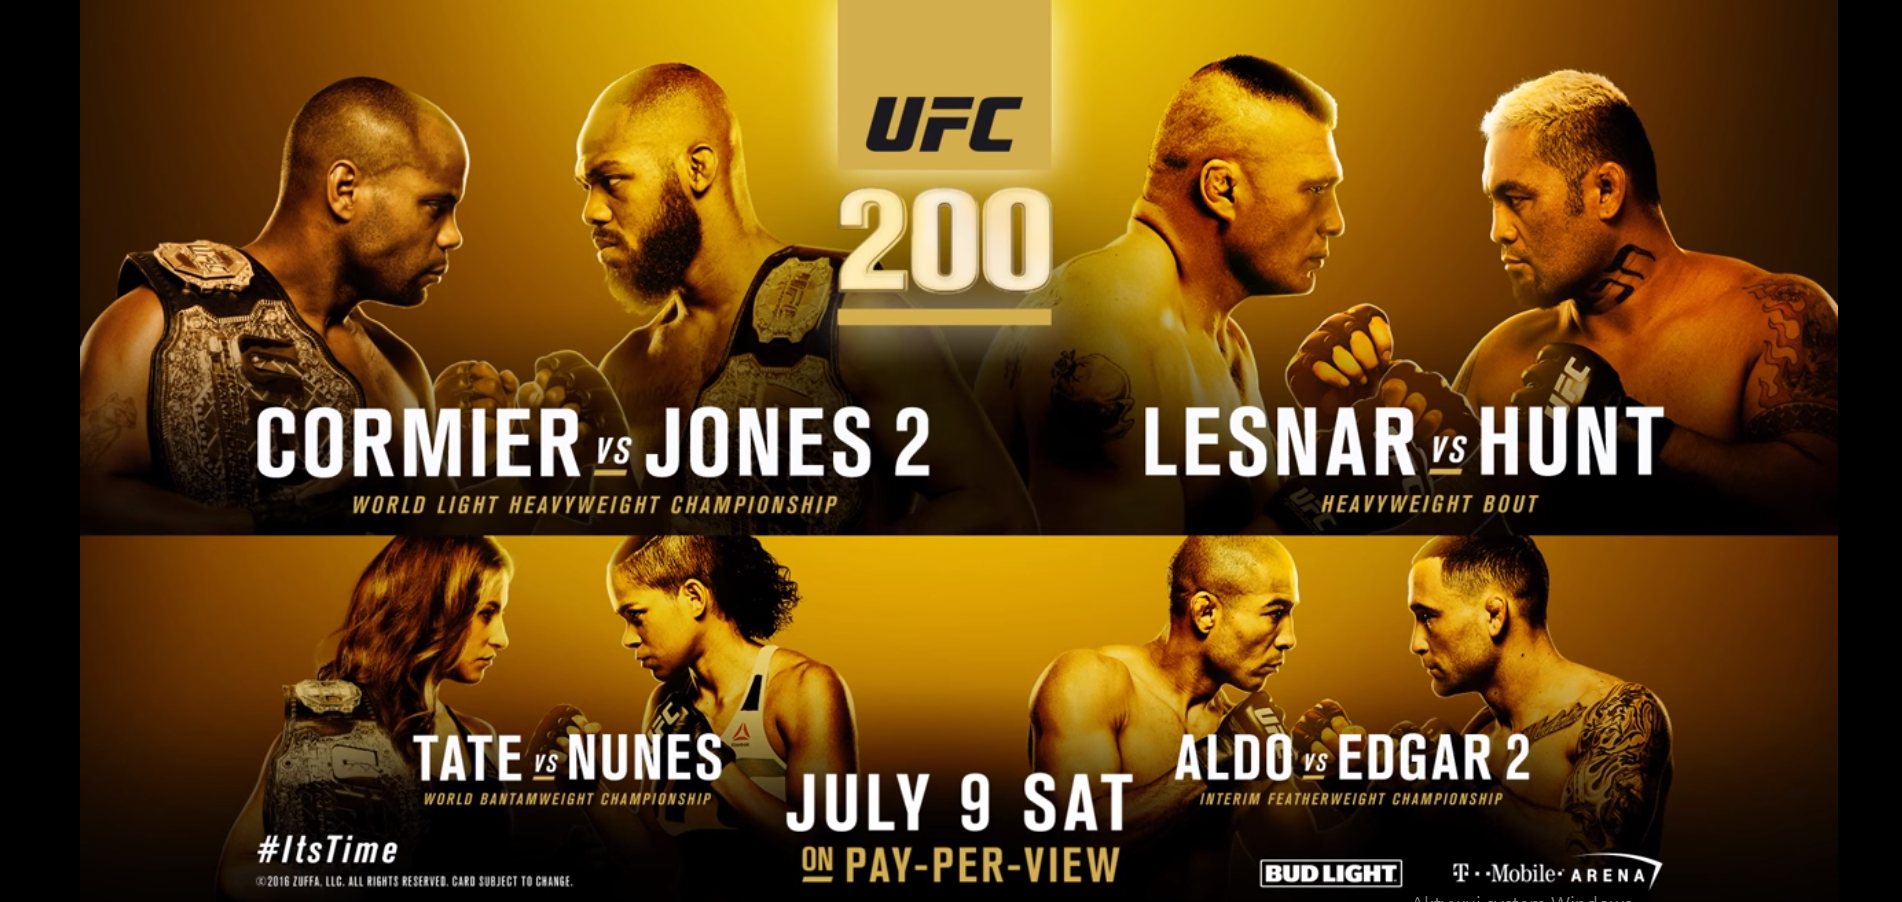 UFC 200: Rozszerzona wideo zapowiedż